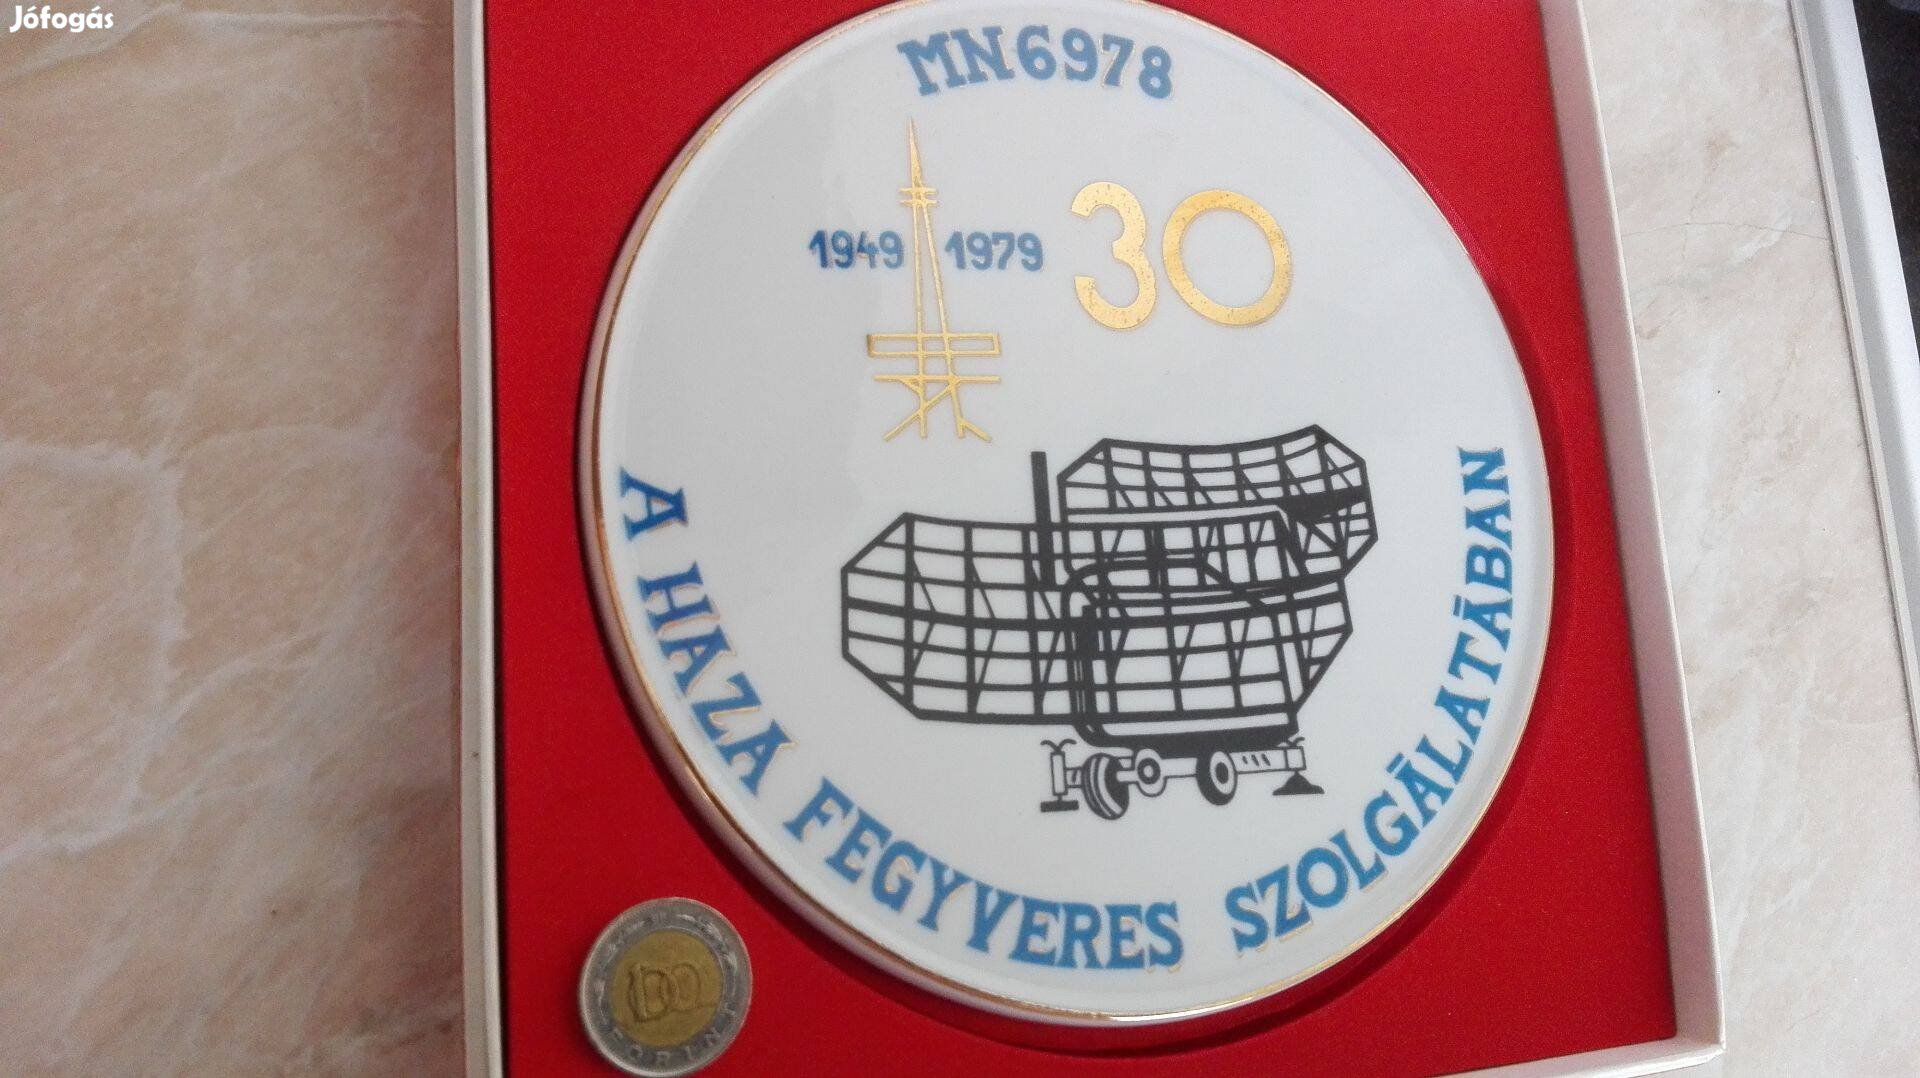 MN 6978 Taszár Hollóházi porcelán kitüntető plakett1949-1979